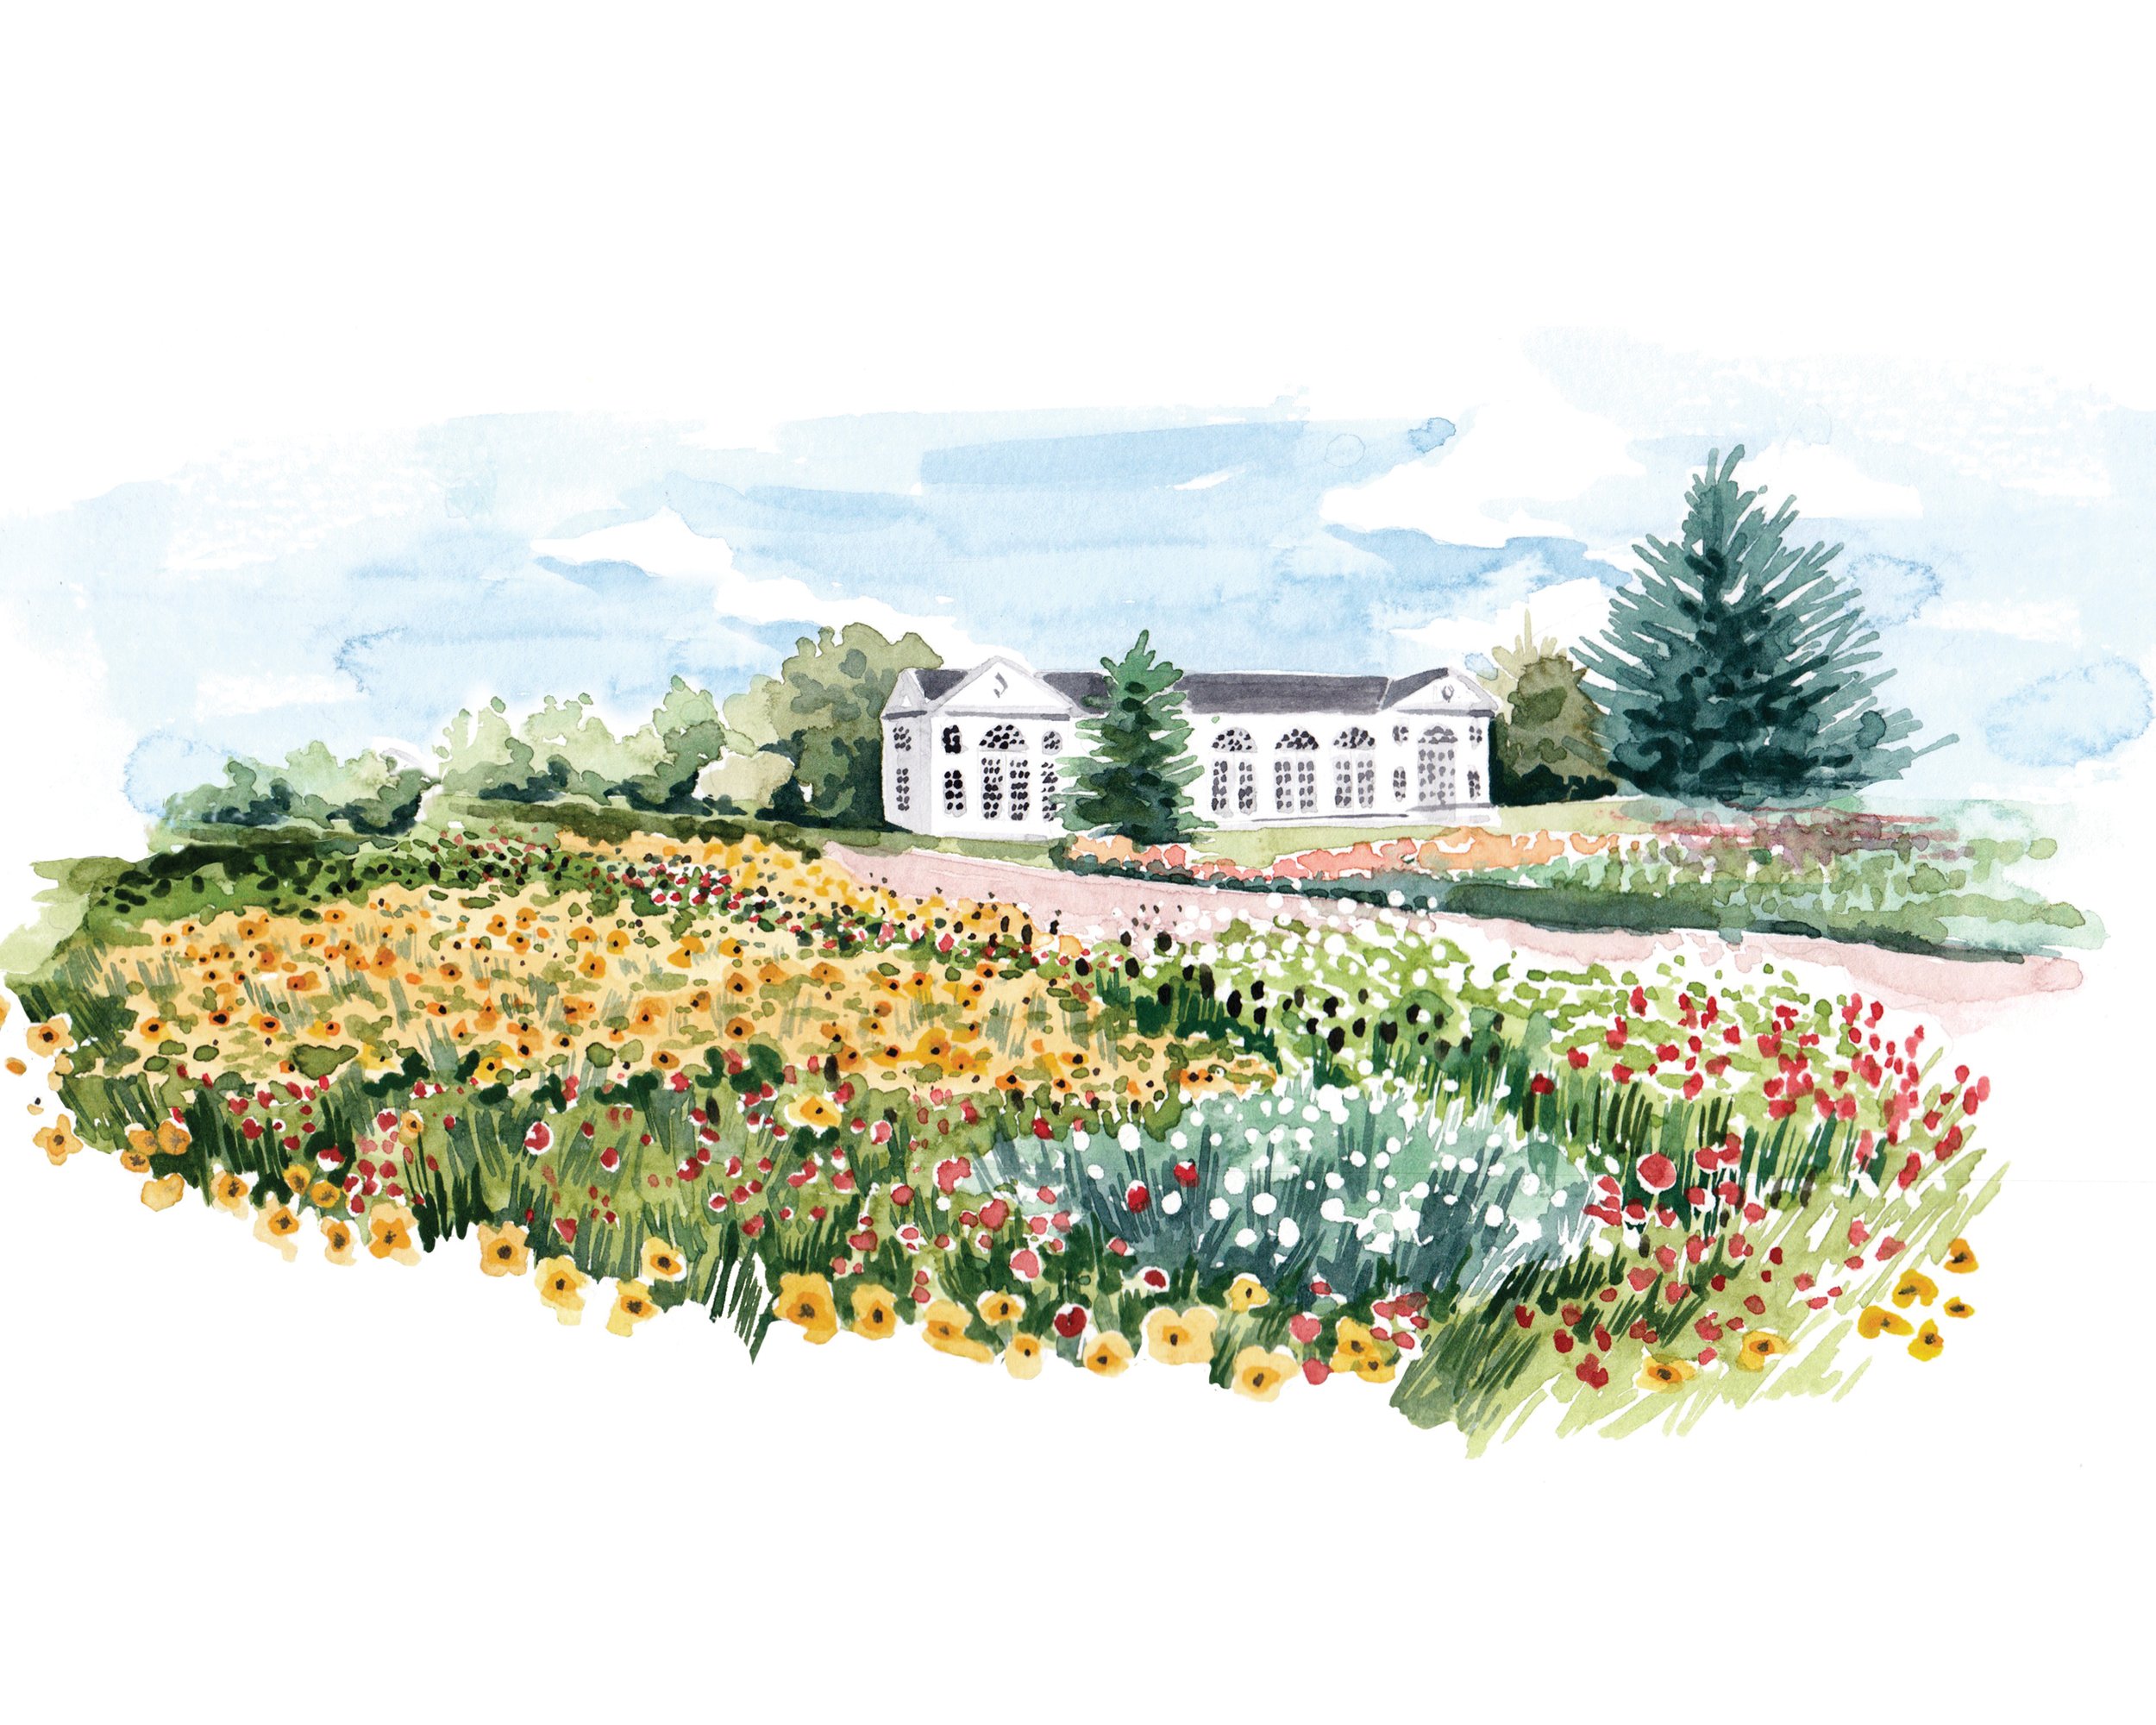 watercolour landscape garden illustration for Kew by Willa Gebbie